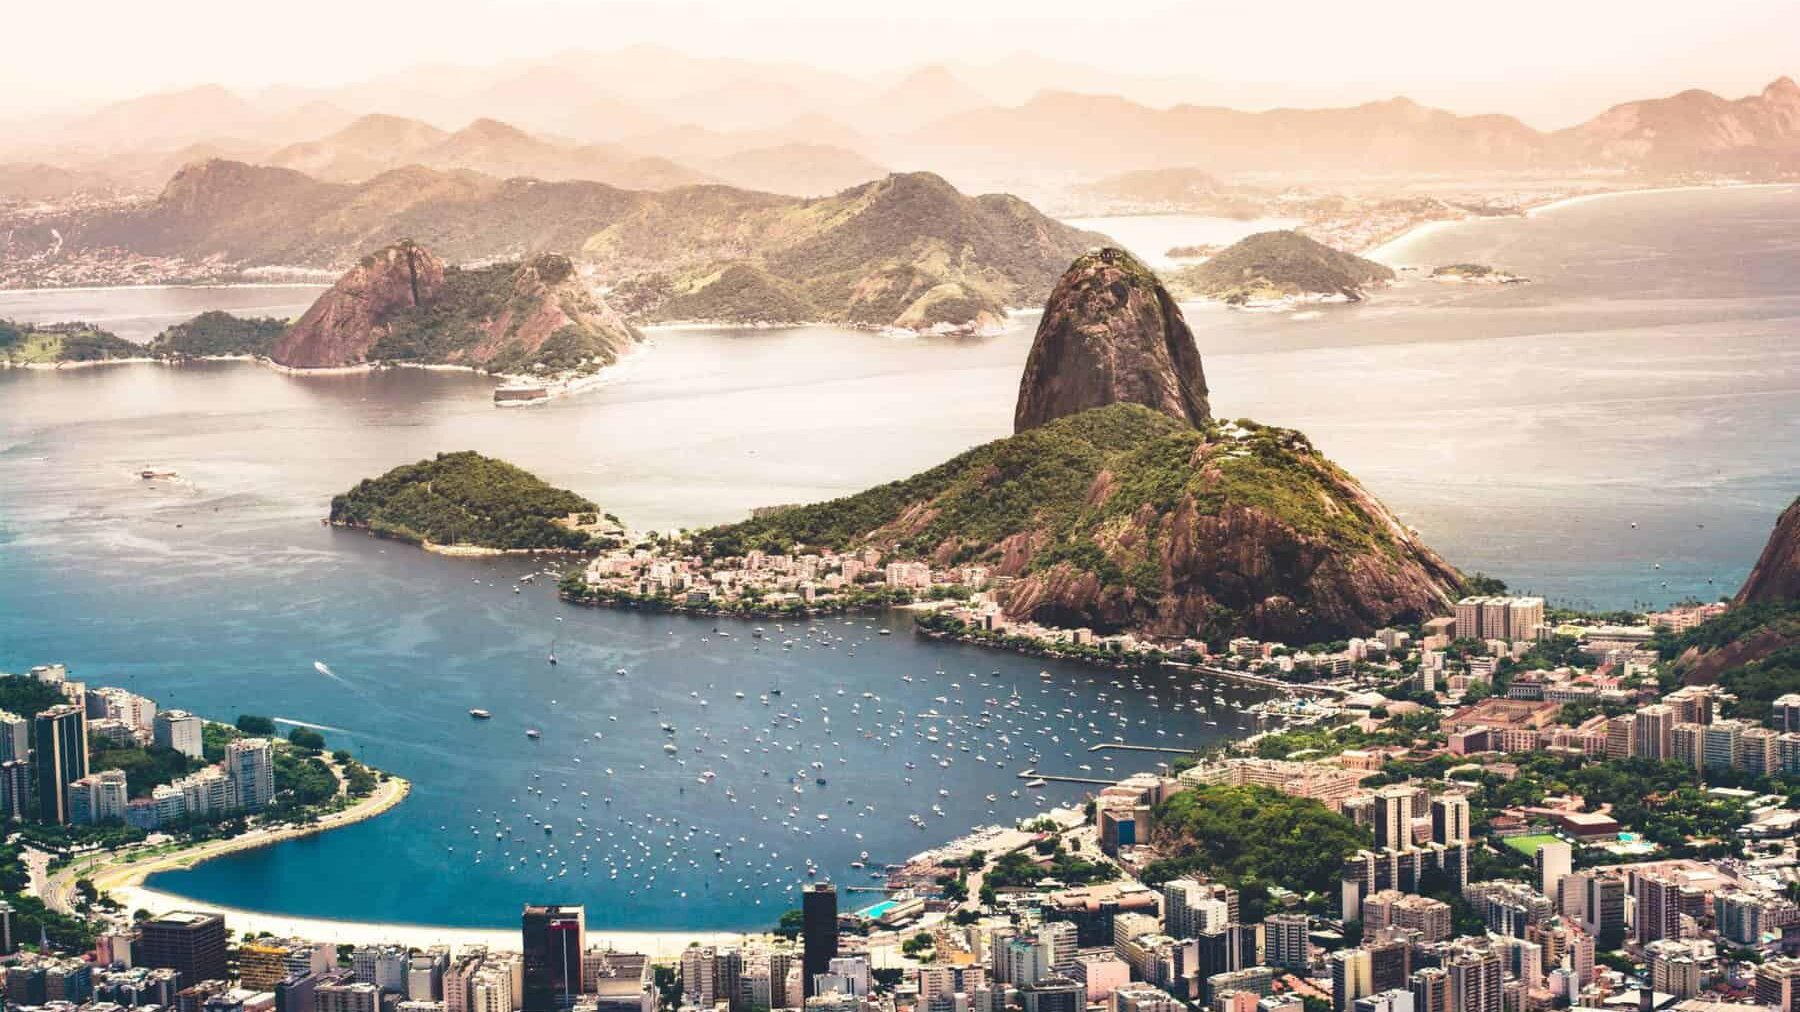 Coastline of Rio de Janeiro, Brazil